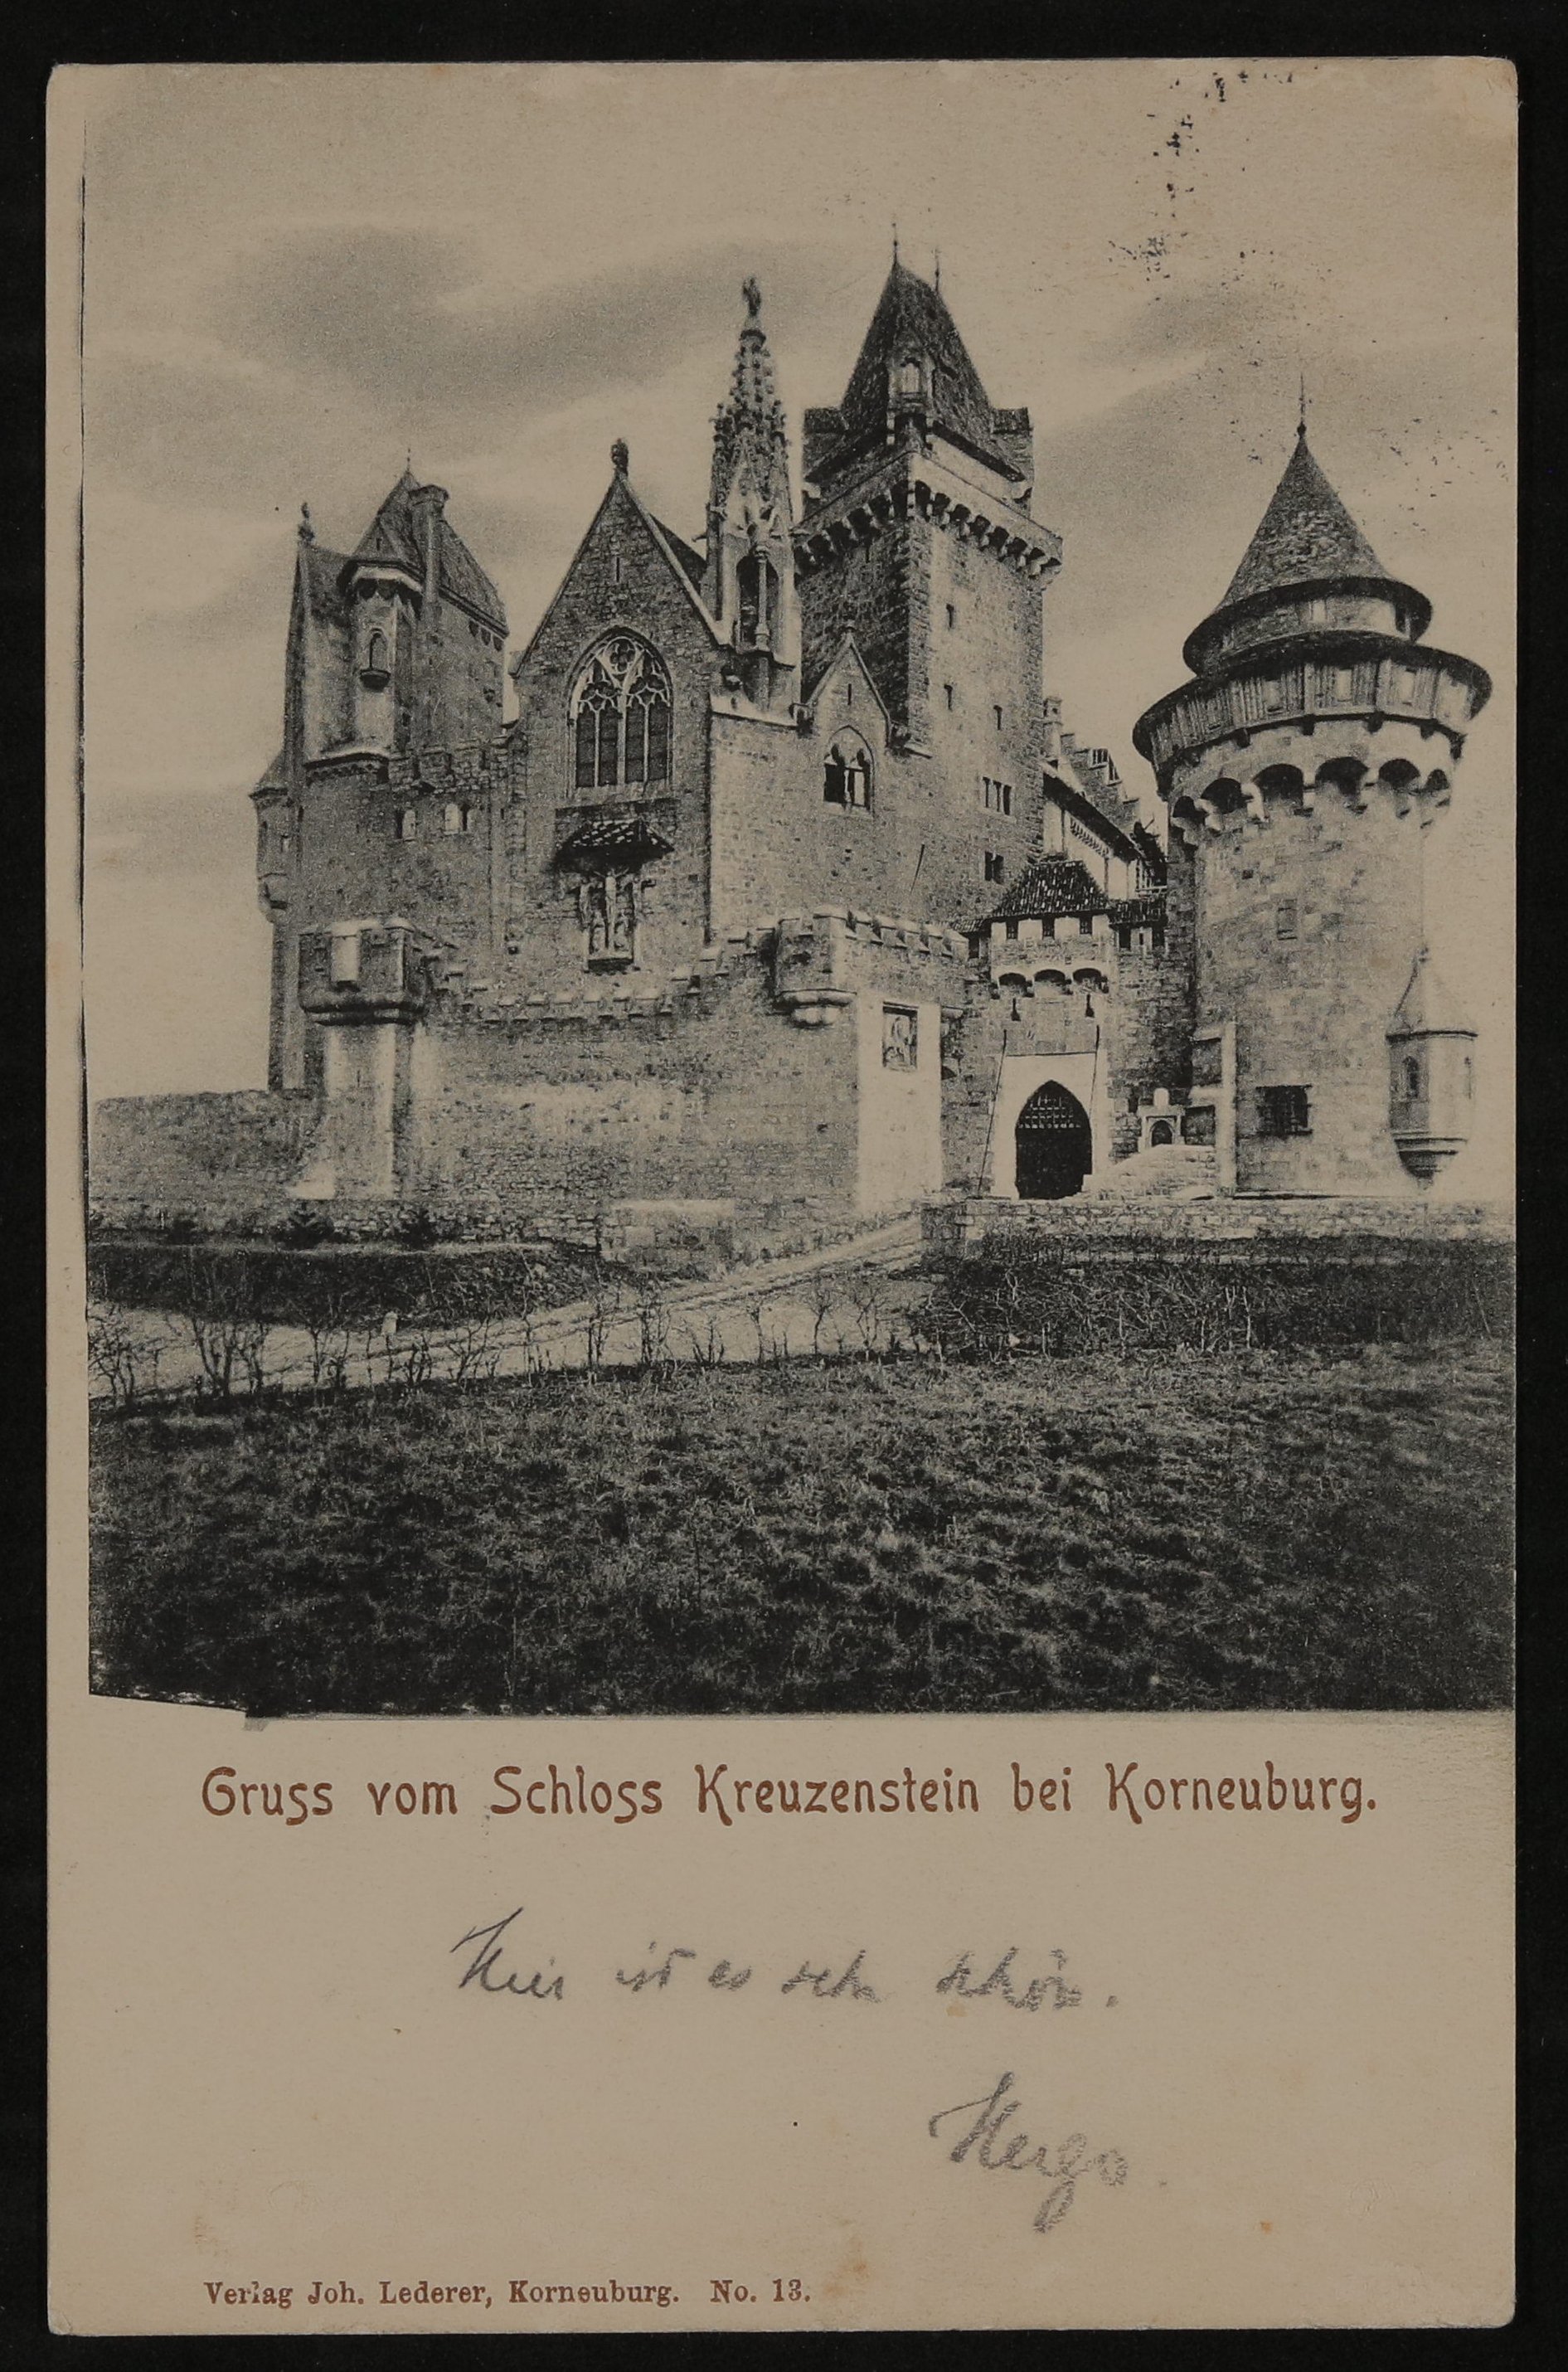 Ansichtskarte von Hofmannsthal an seine Mutter Anna mit "Gruss vom Schloss Kreuzenstein bei Korneuburg." (Freies Deutsches Hochstift / Frankfurter Goethe-Museum CC BY-NC-SA)